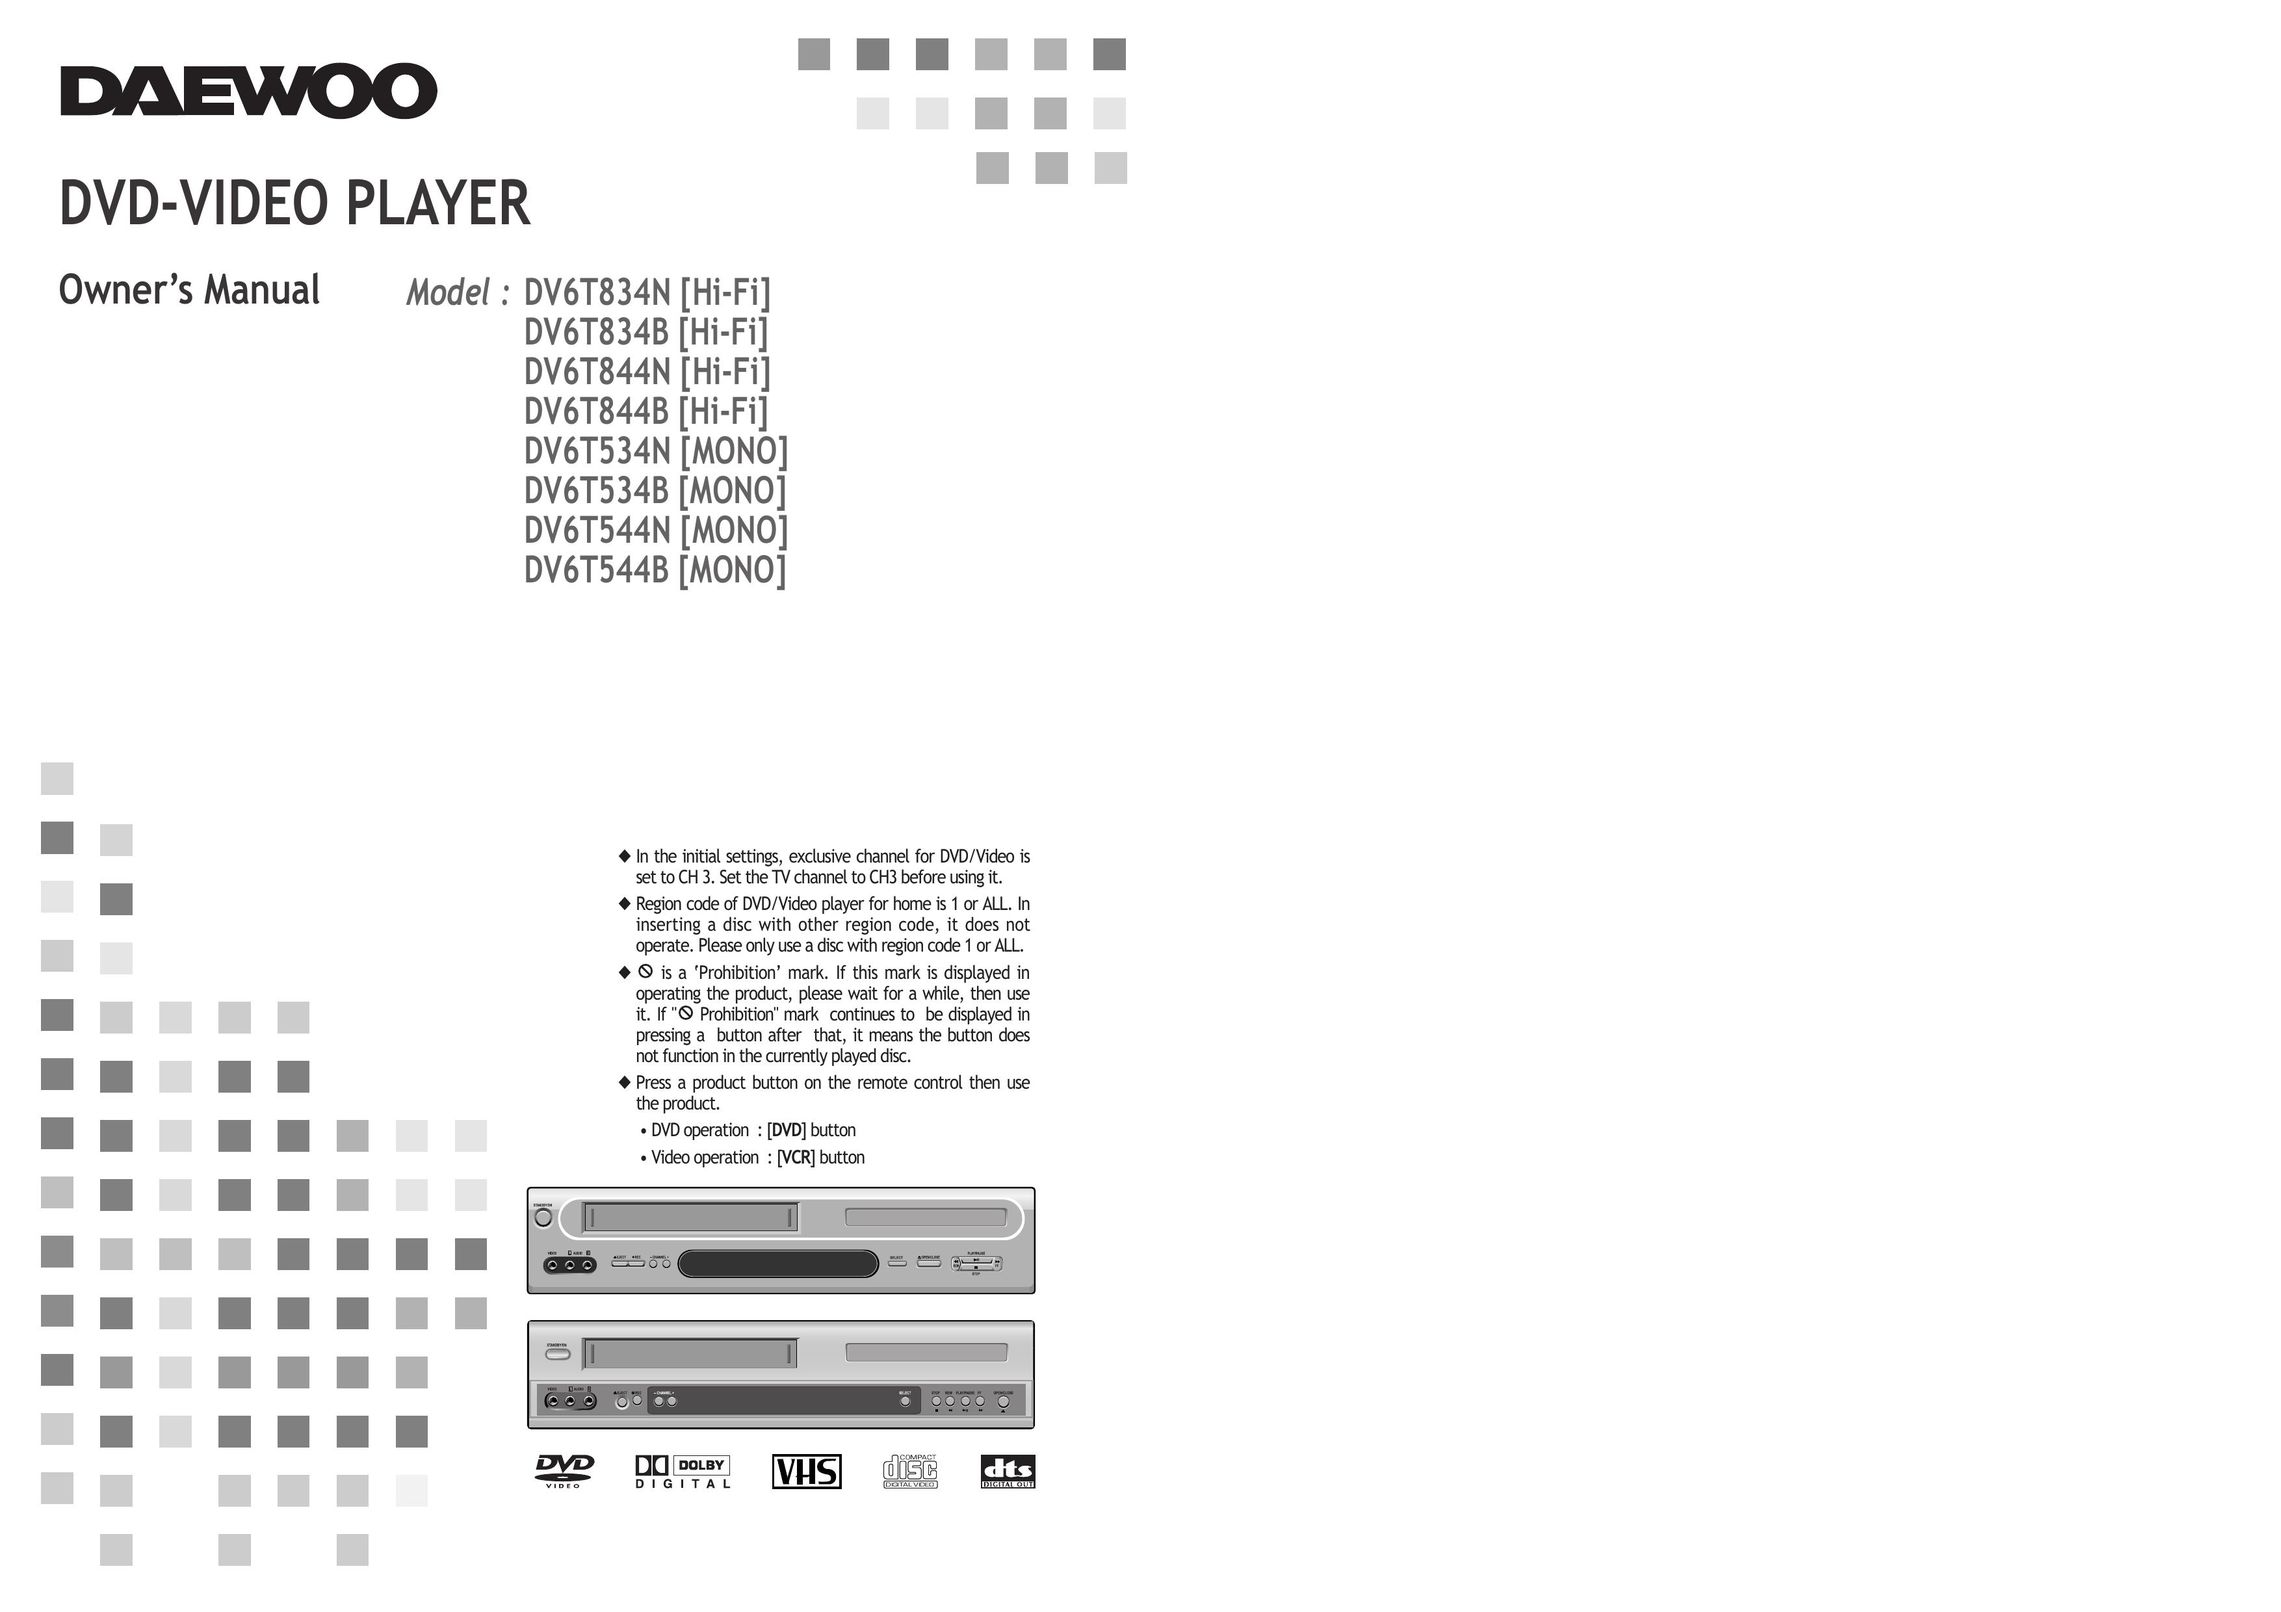 Daewoo DV6T844B DVD Player User Manual